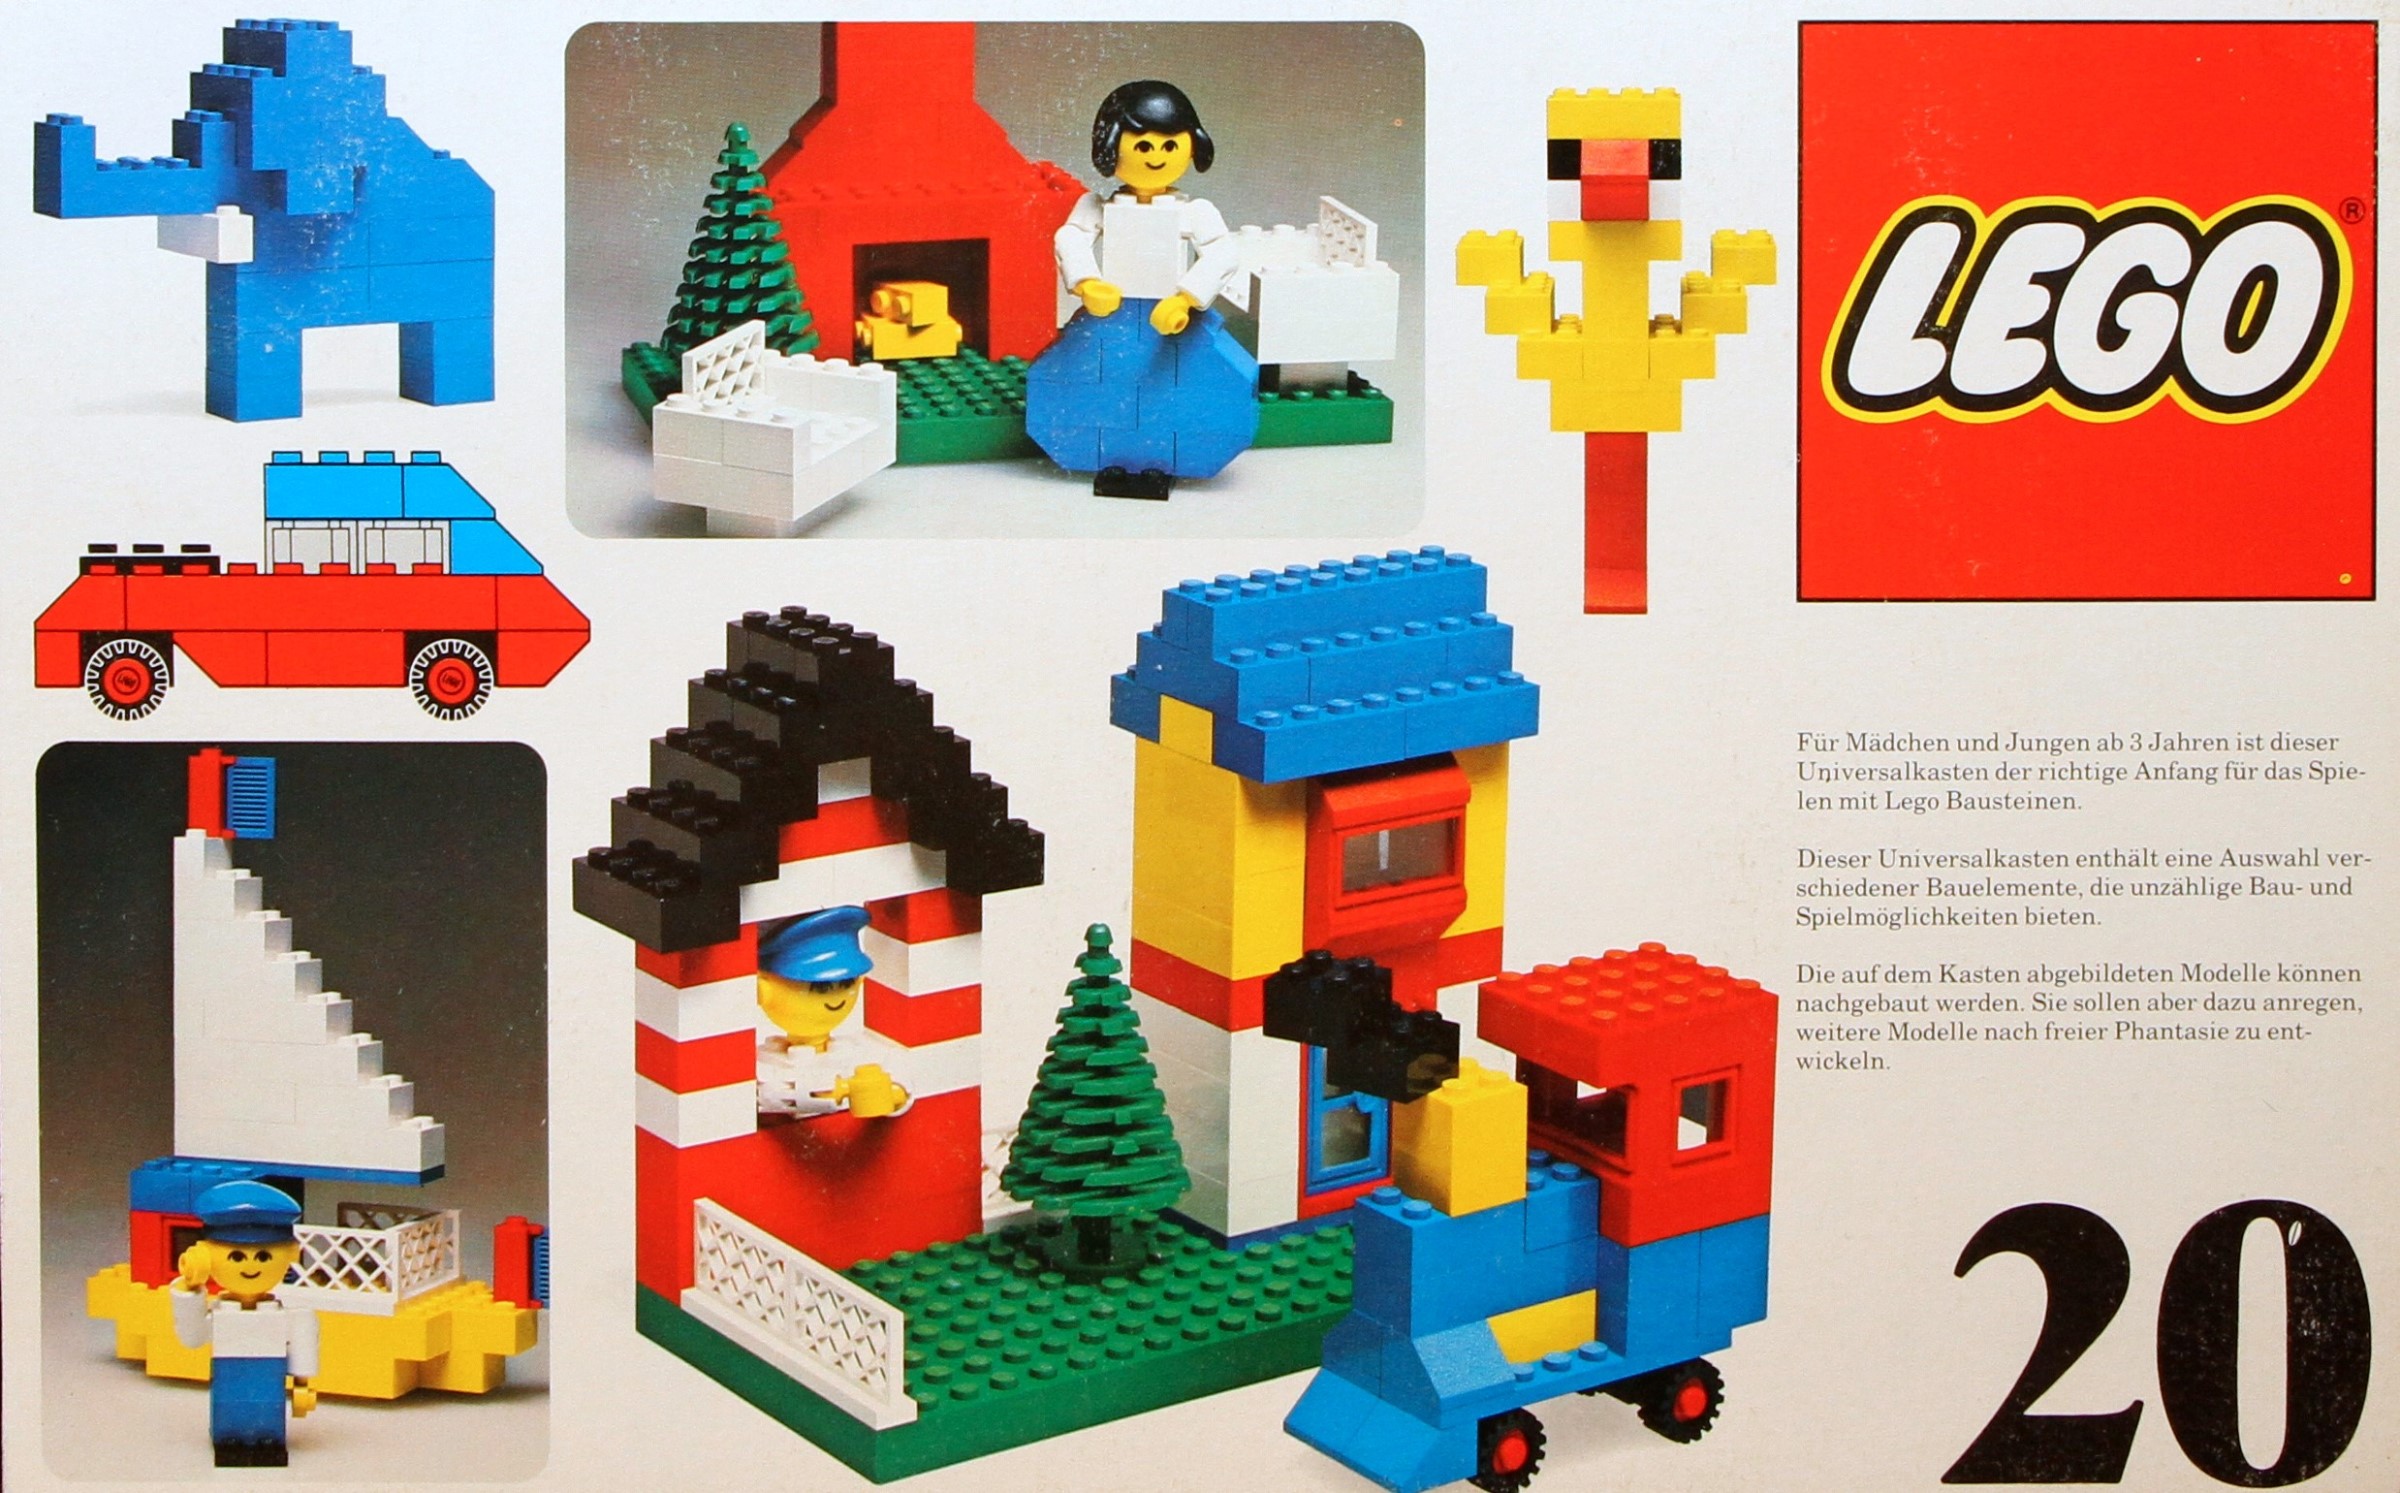 LEGO Basic